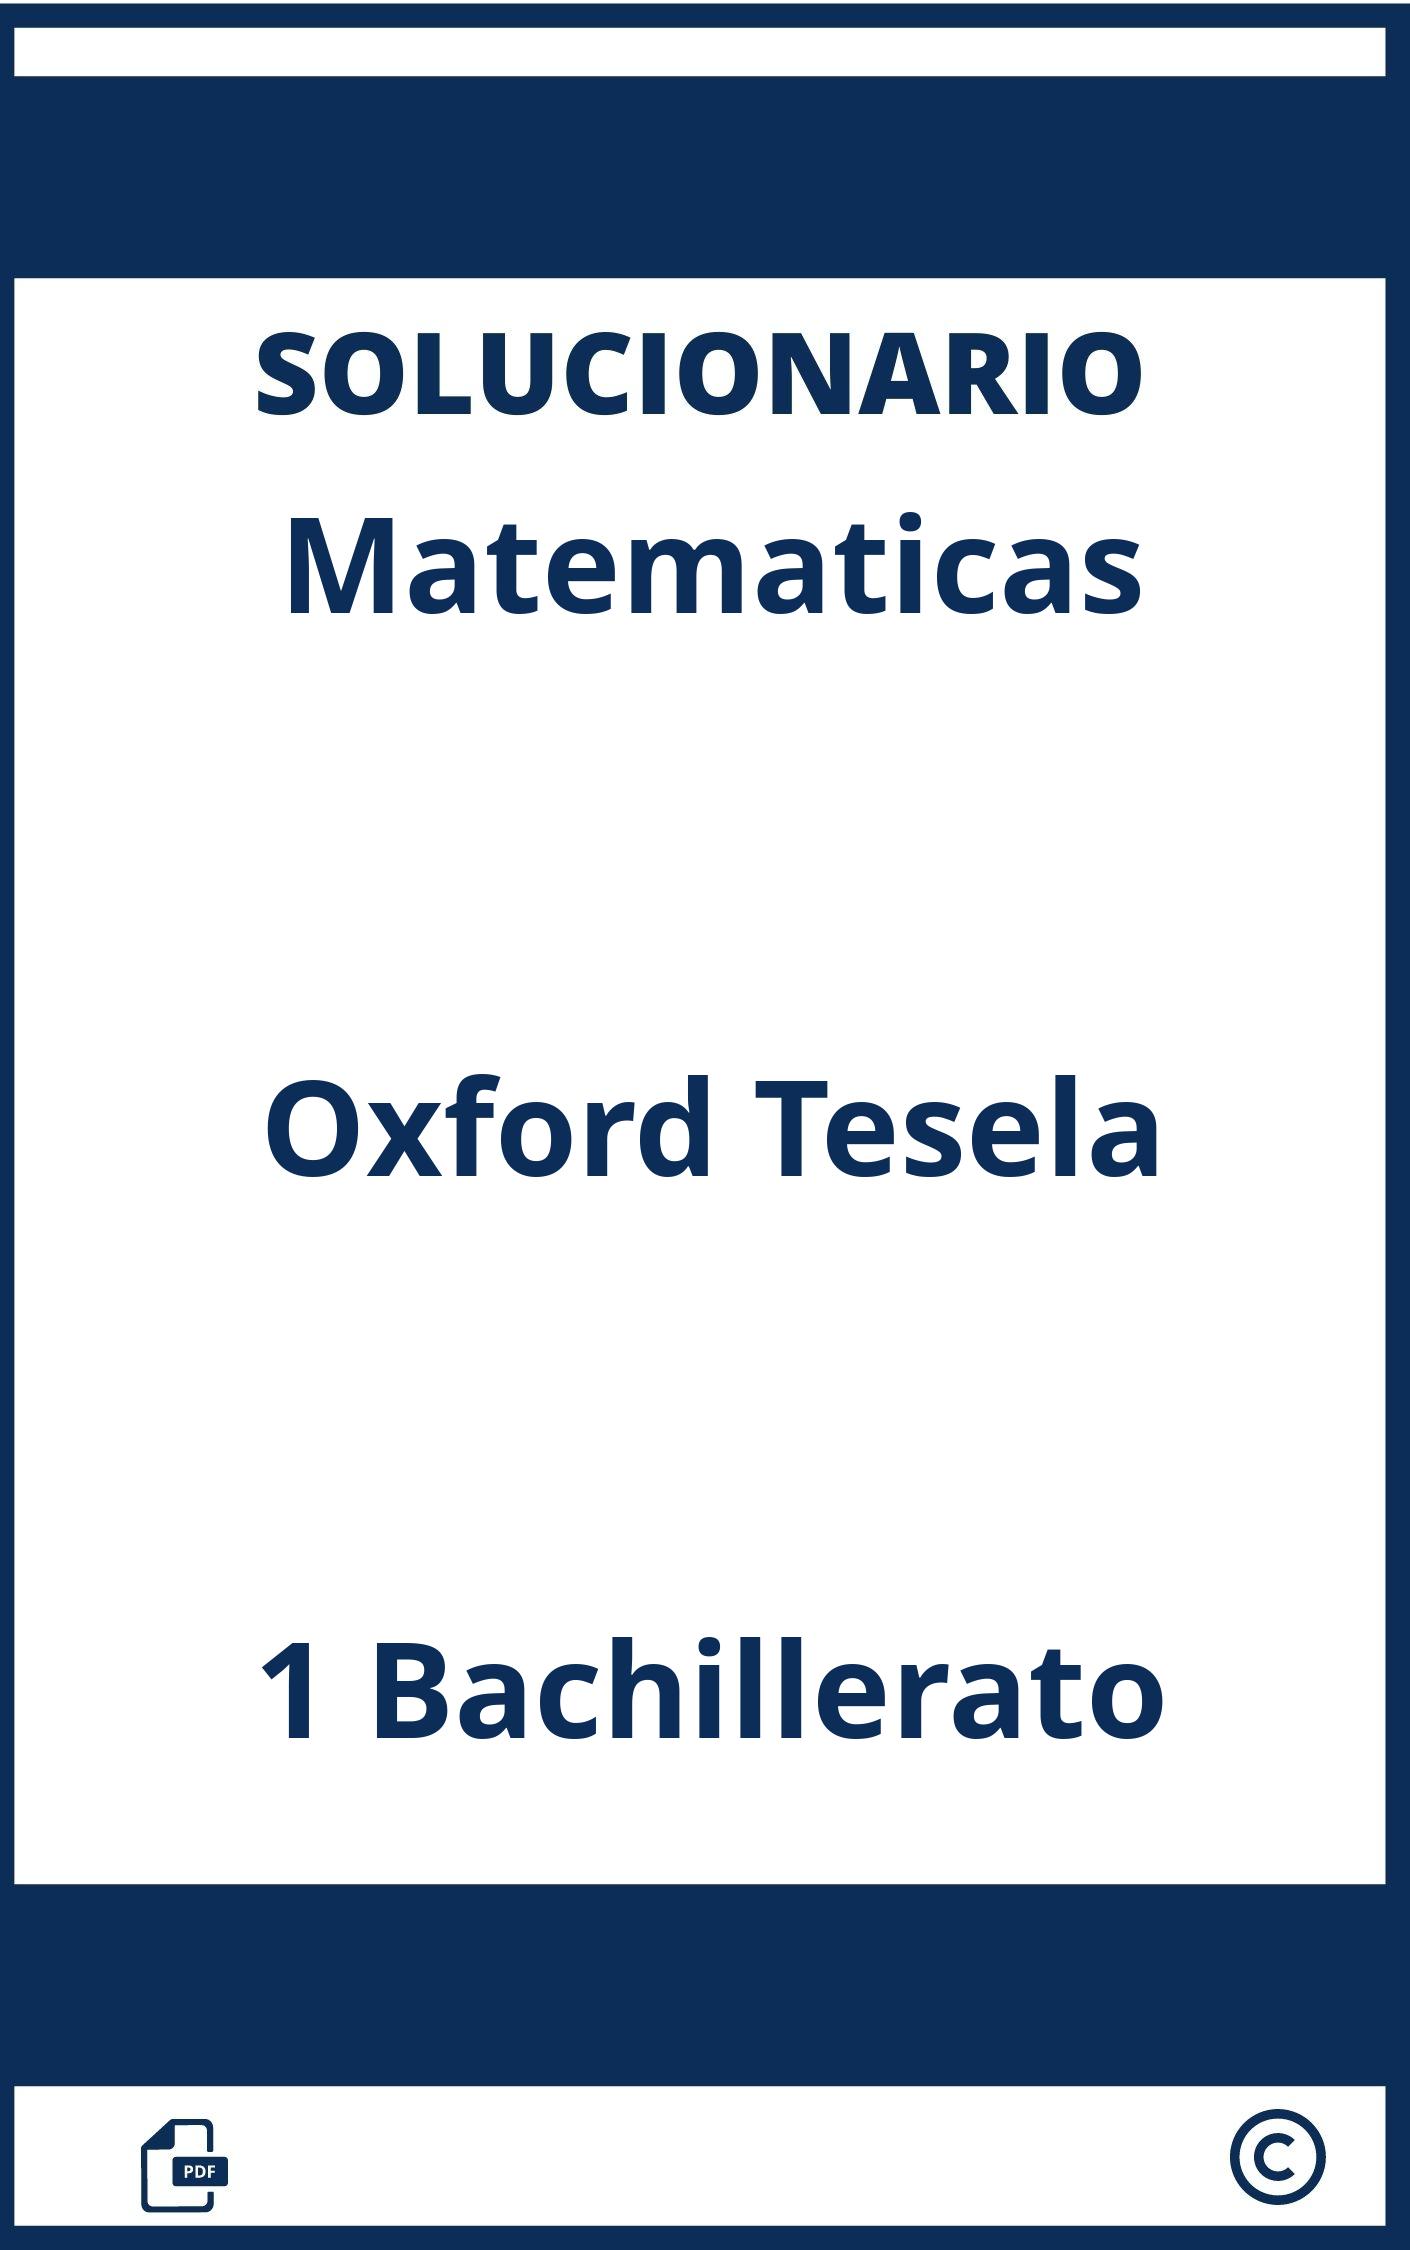 Solucionario Matematicas 1 Bachillerato Oxford Tesela Pdf